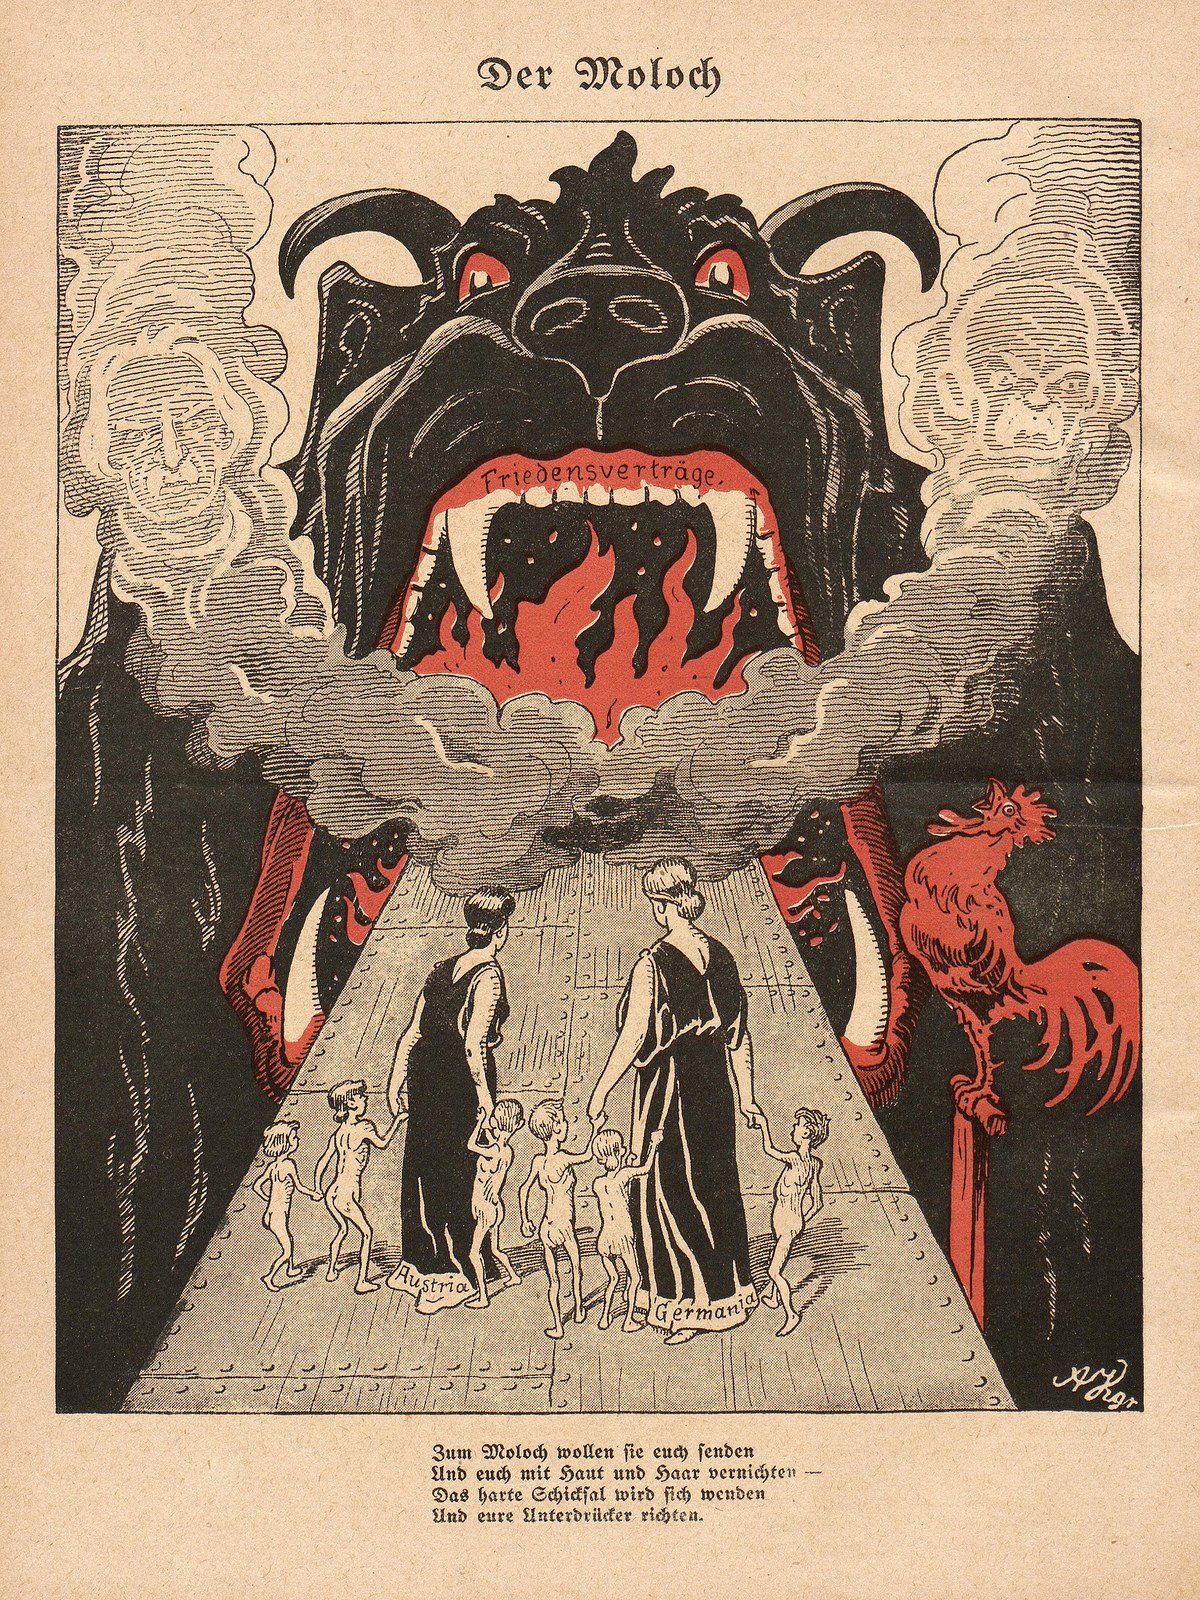 Arthur Krüger - The Moloch, 1920